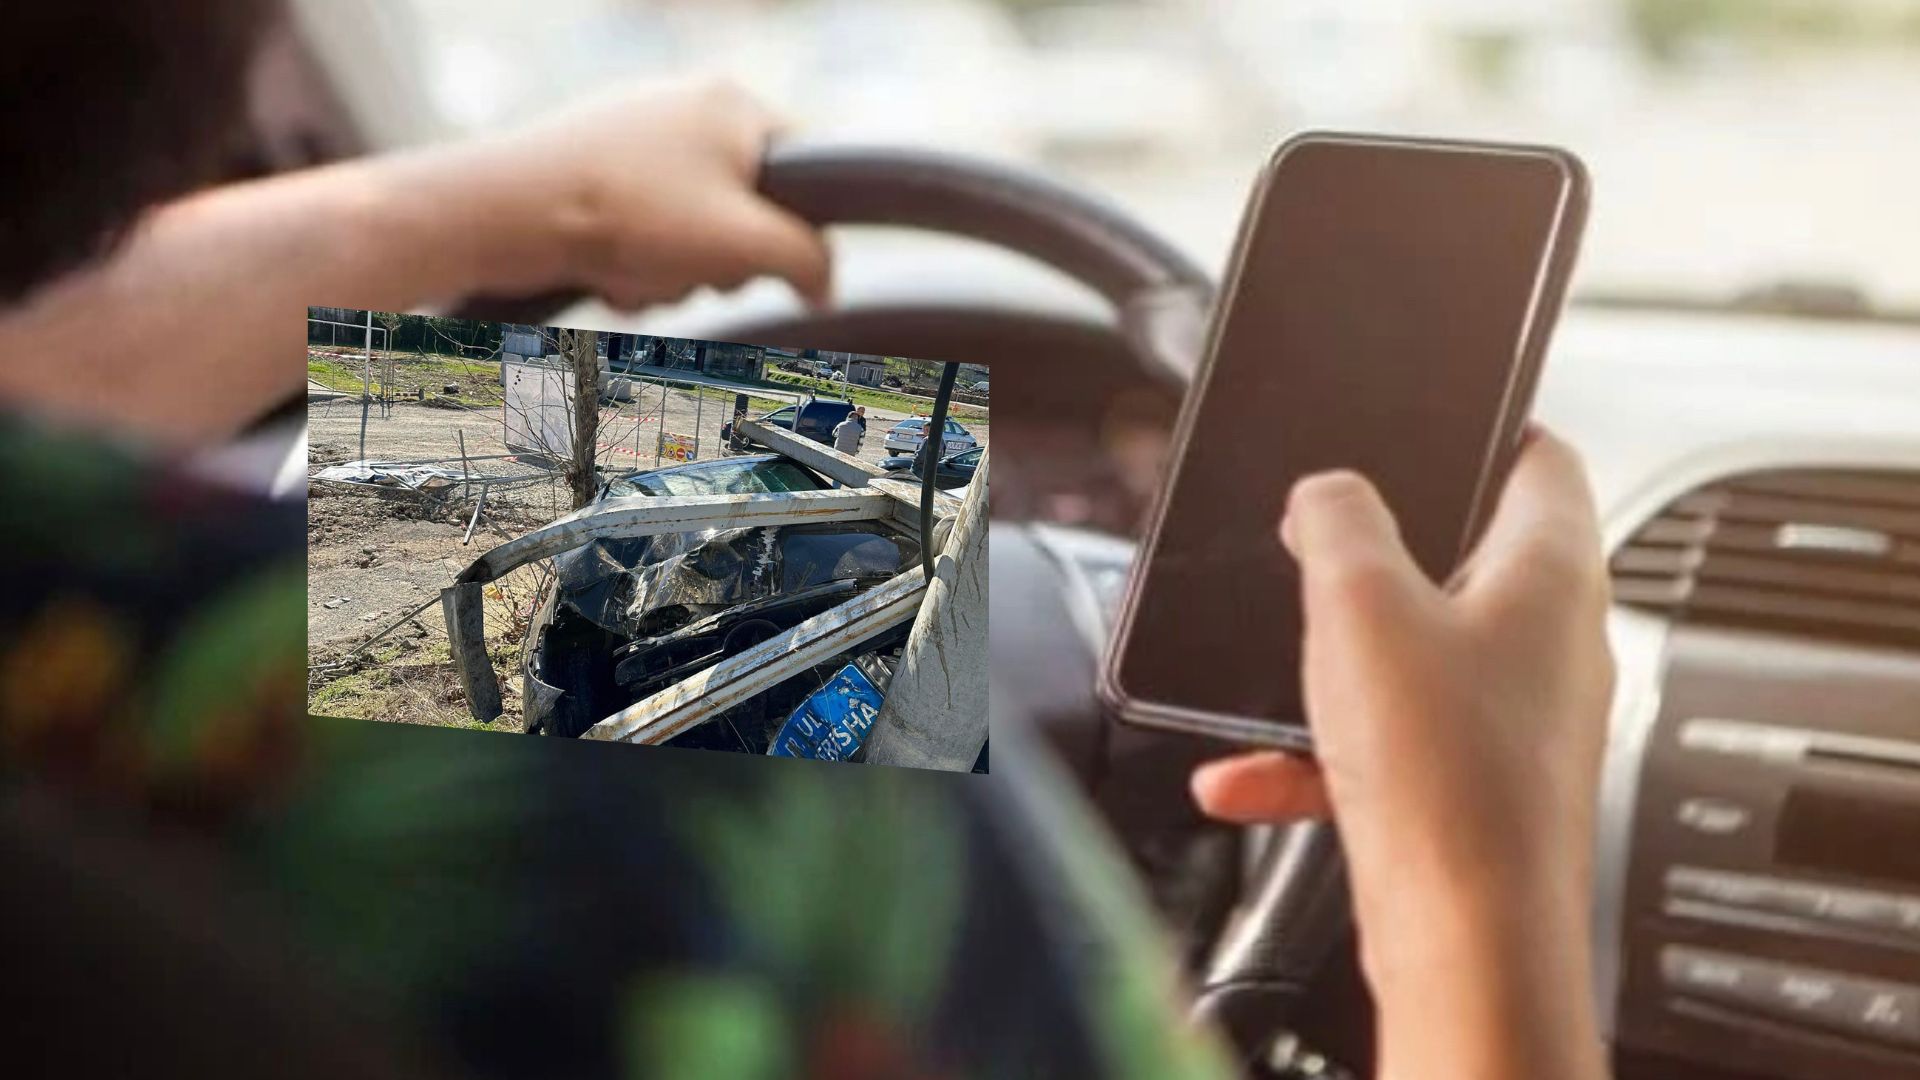 I shpëtoi aksidentit të rëndë, kosovari – qytetarëve: Mos e përdorni telefonin gjatë ngasjes